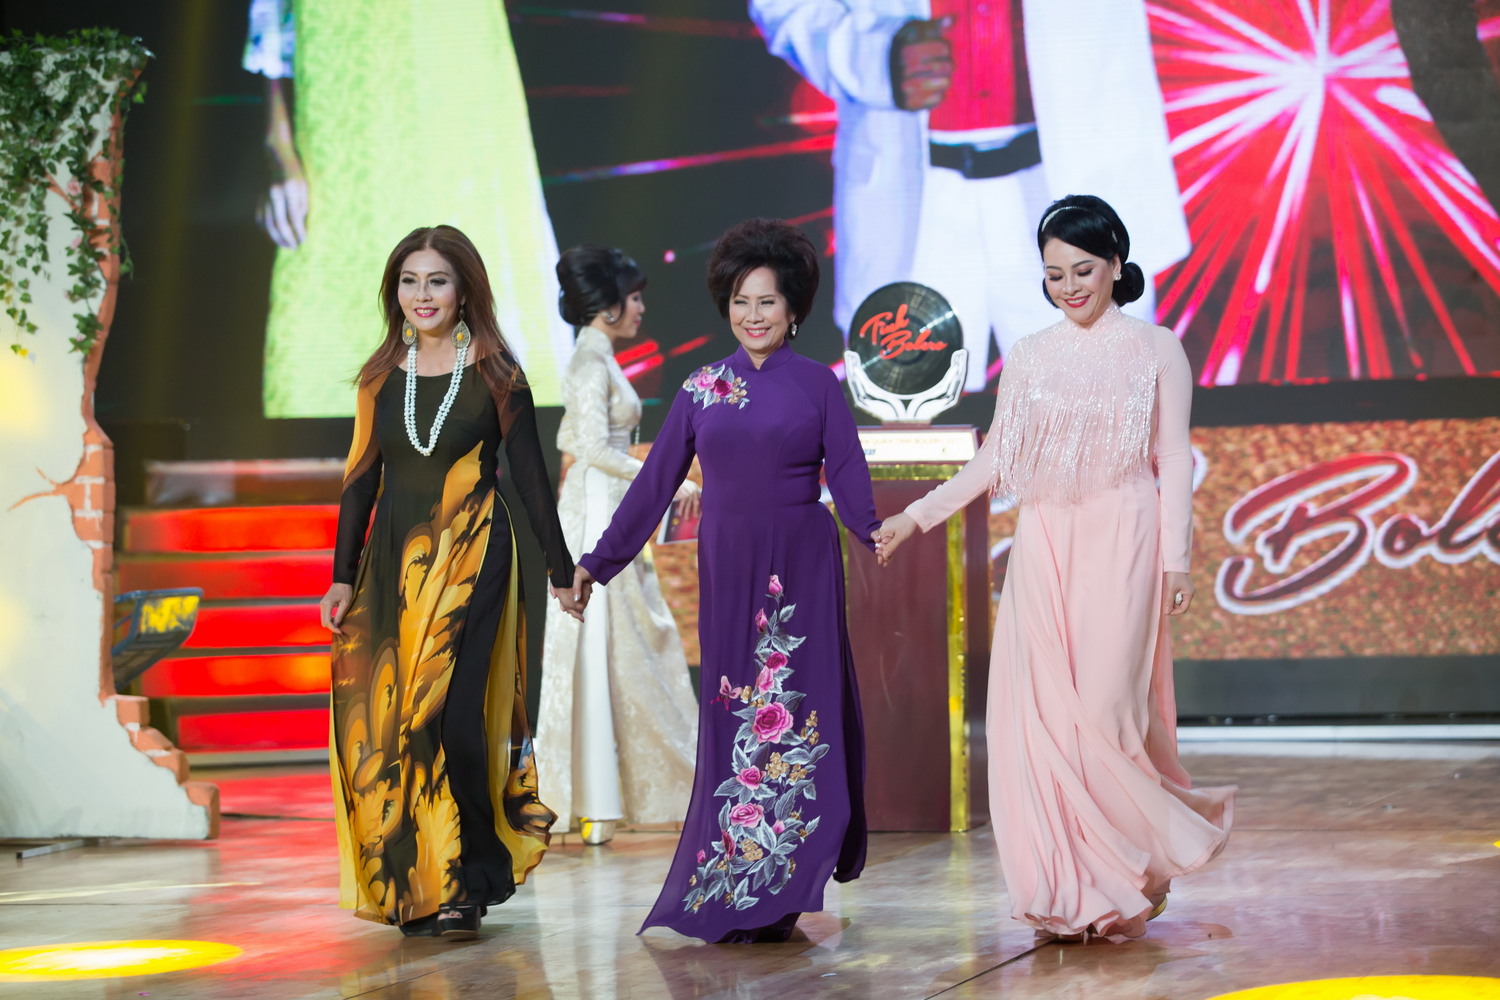 Ban giám khảo đêm chung kết xếp hạng tối 13/11 là ca sĩ Phương Dung, Họa Mi và Đông Đào